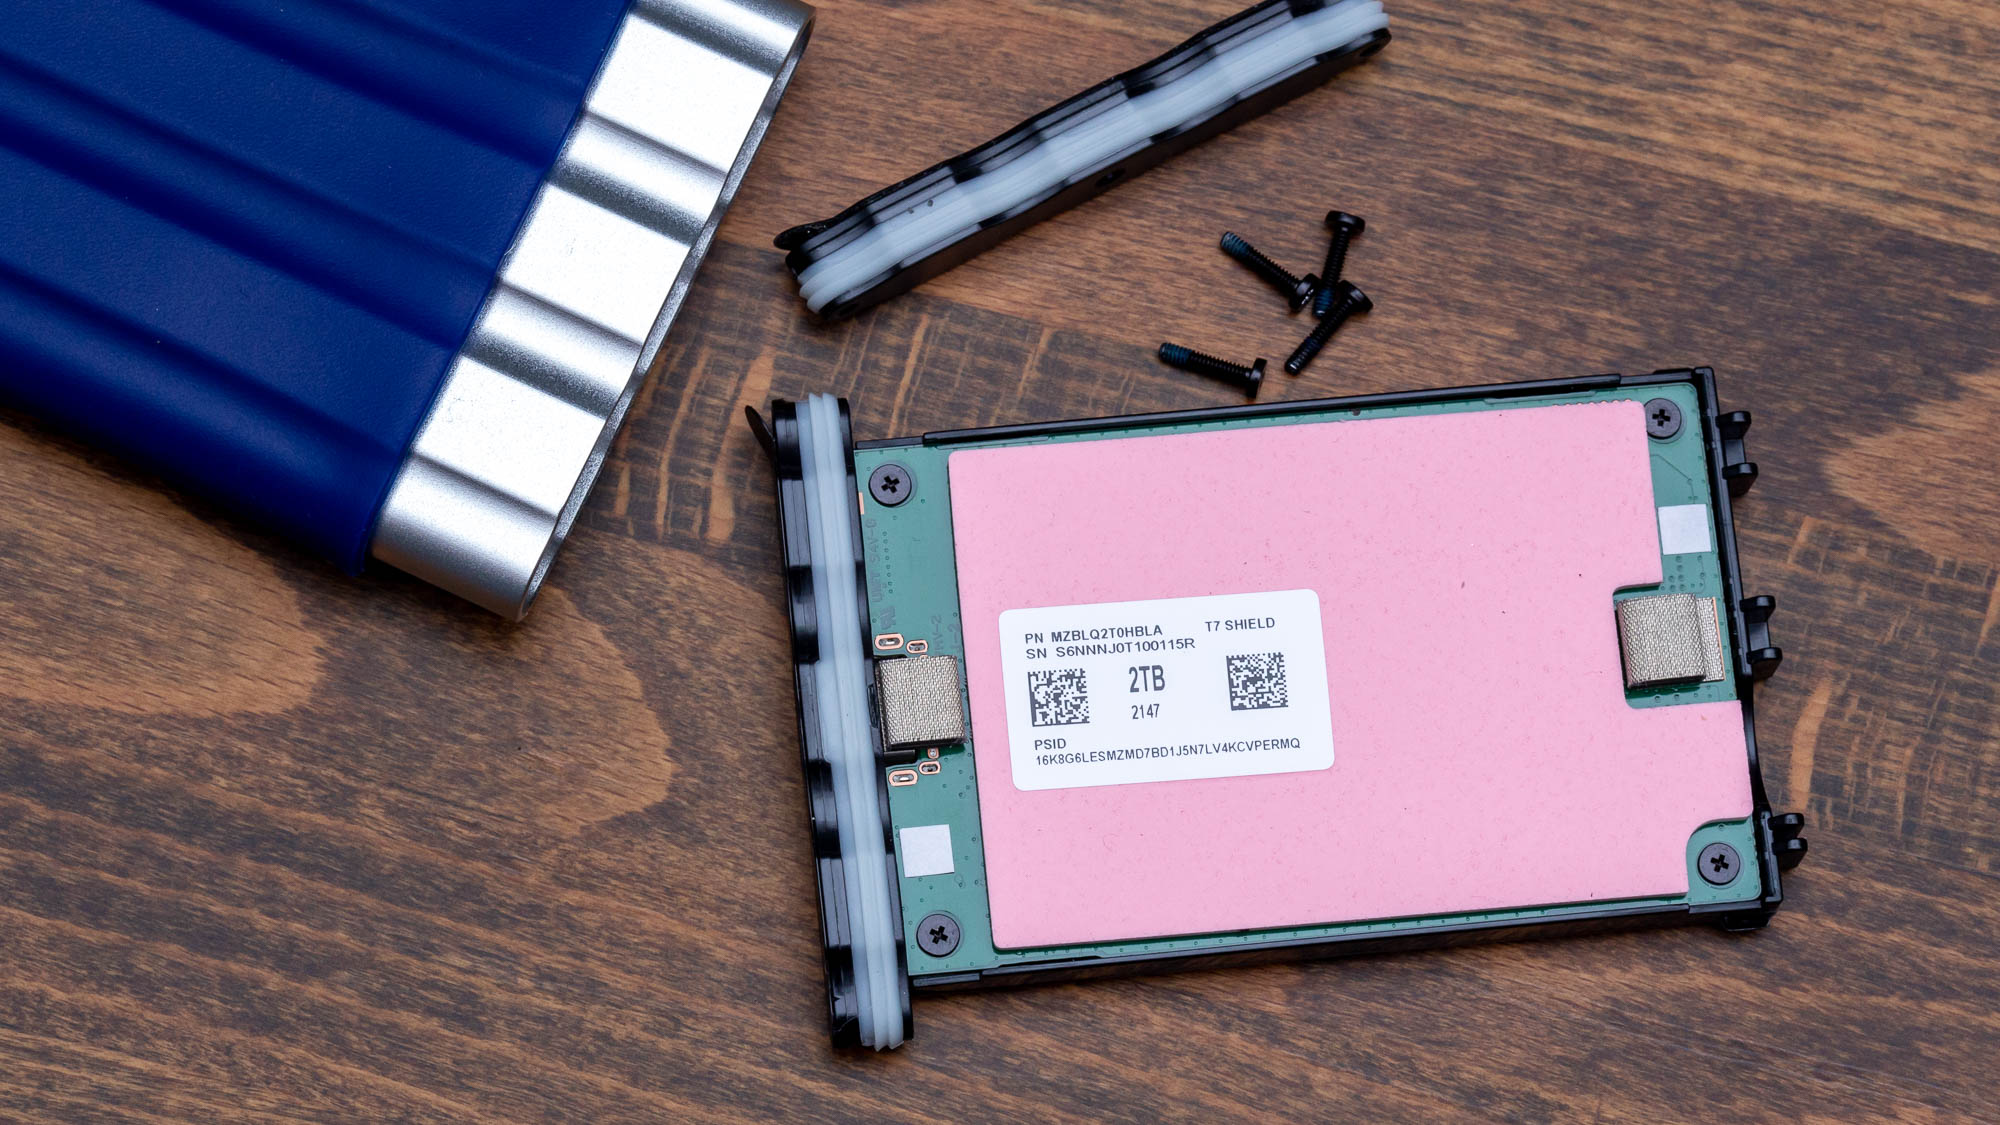 Samsung T7 Shield 2TB Portable SSD